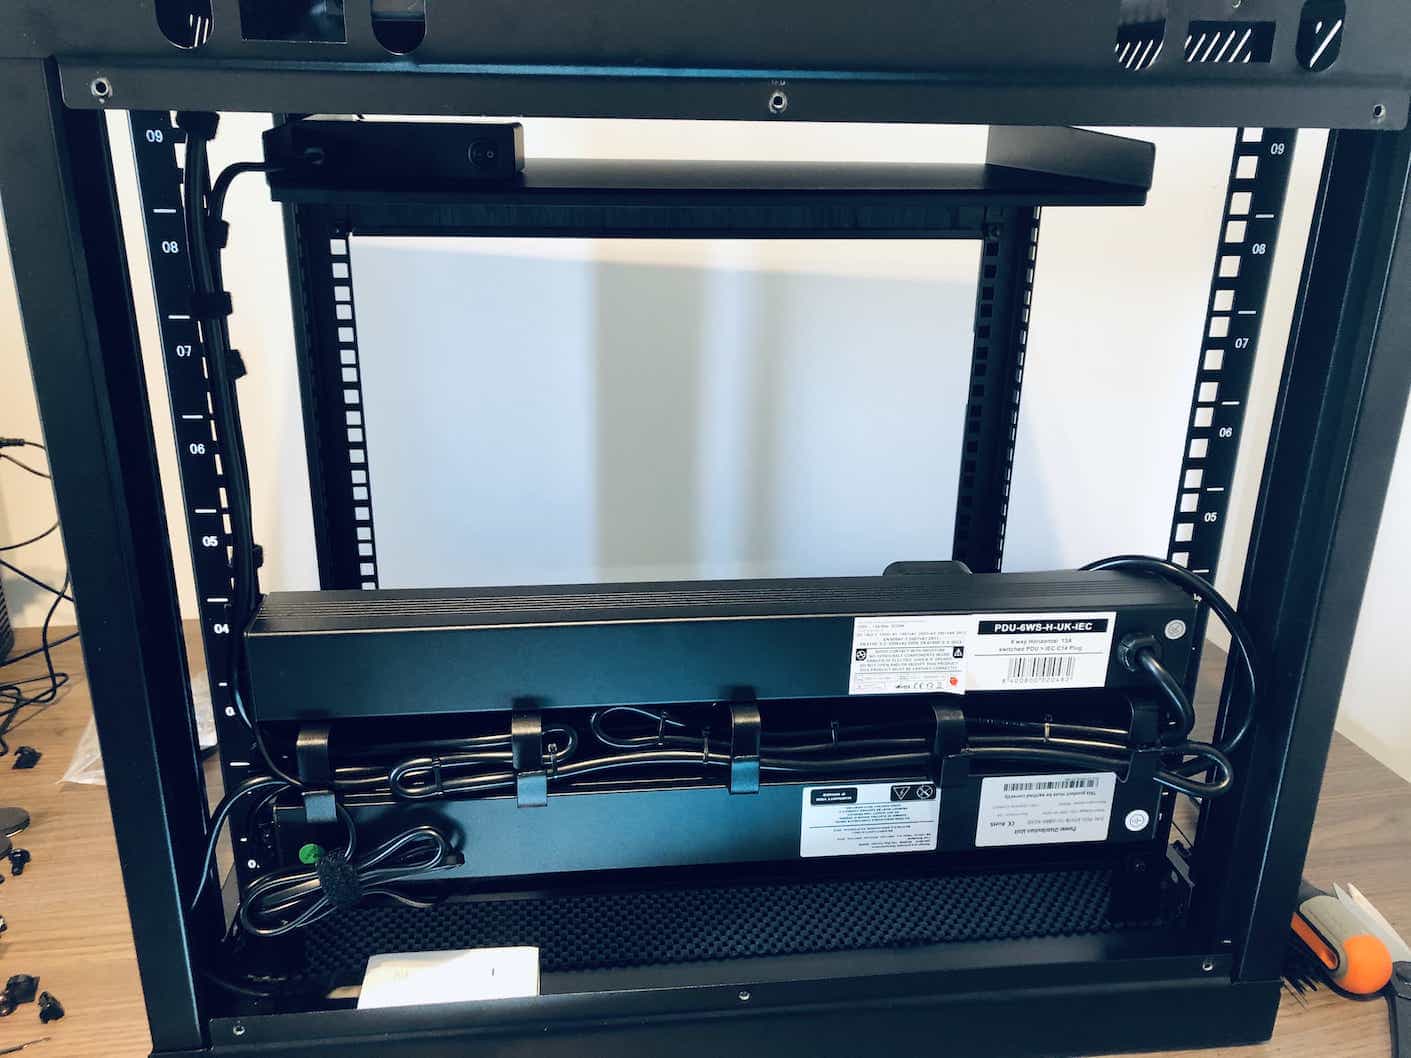 Fixing PDU units into 9U rack cabin for Unifi UDM Pro